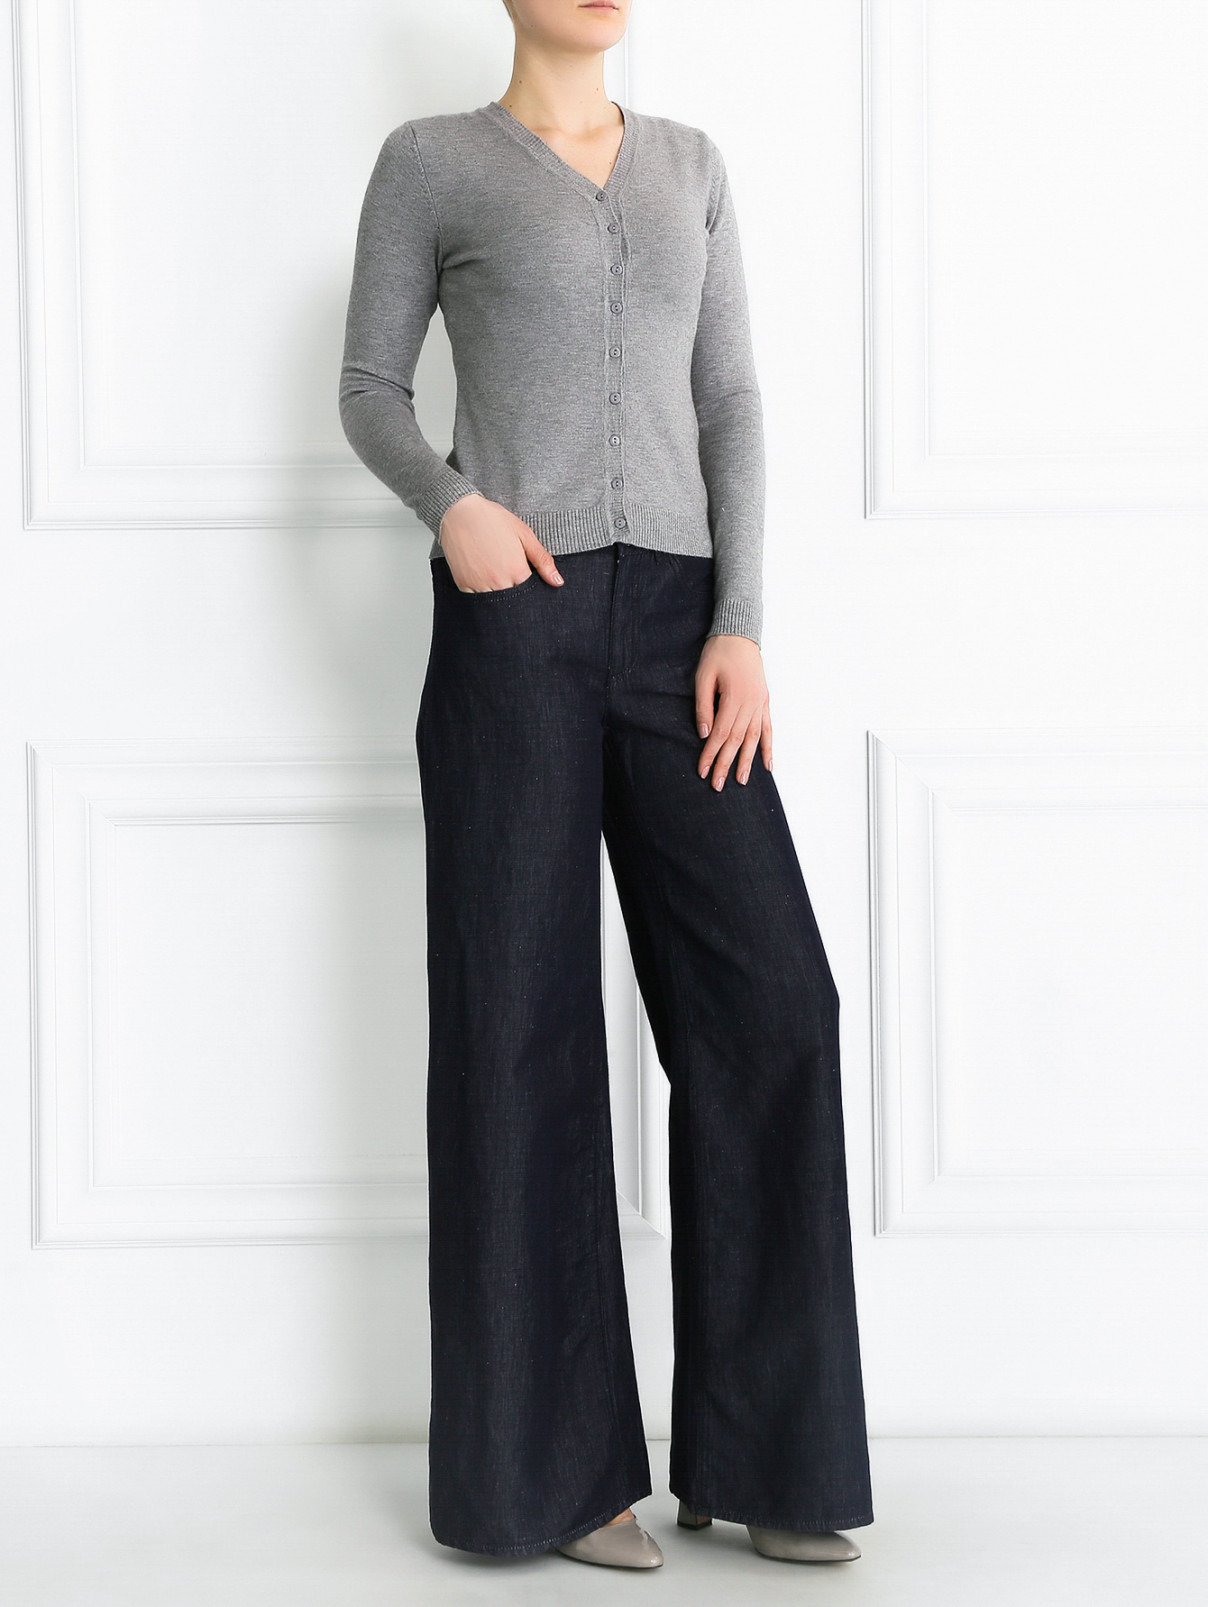 Широкие брюки из льна и хлопка Armani Collezioni  –  Модель Общий вид  – Цвет:  Синий